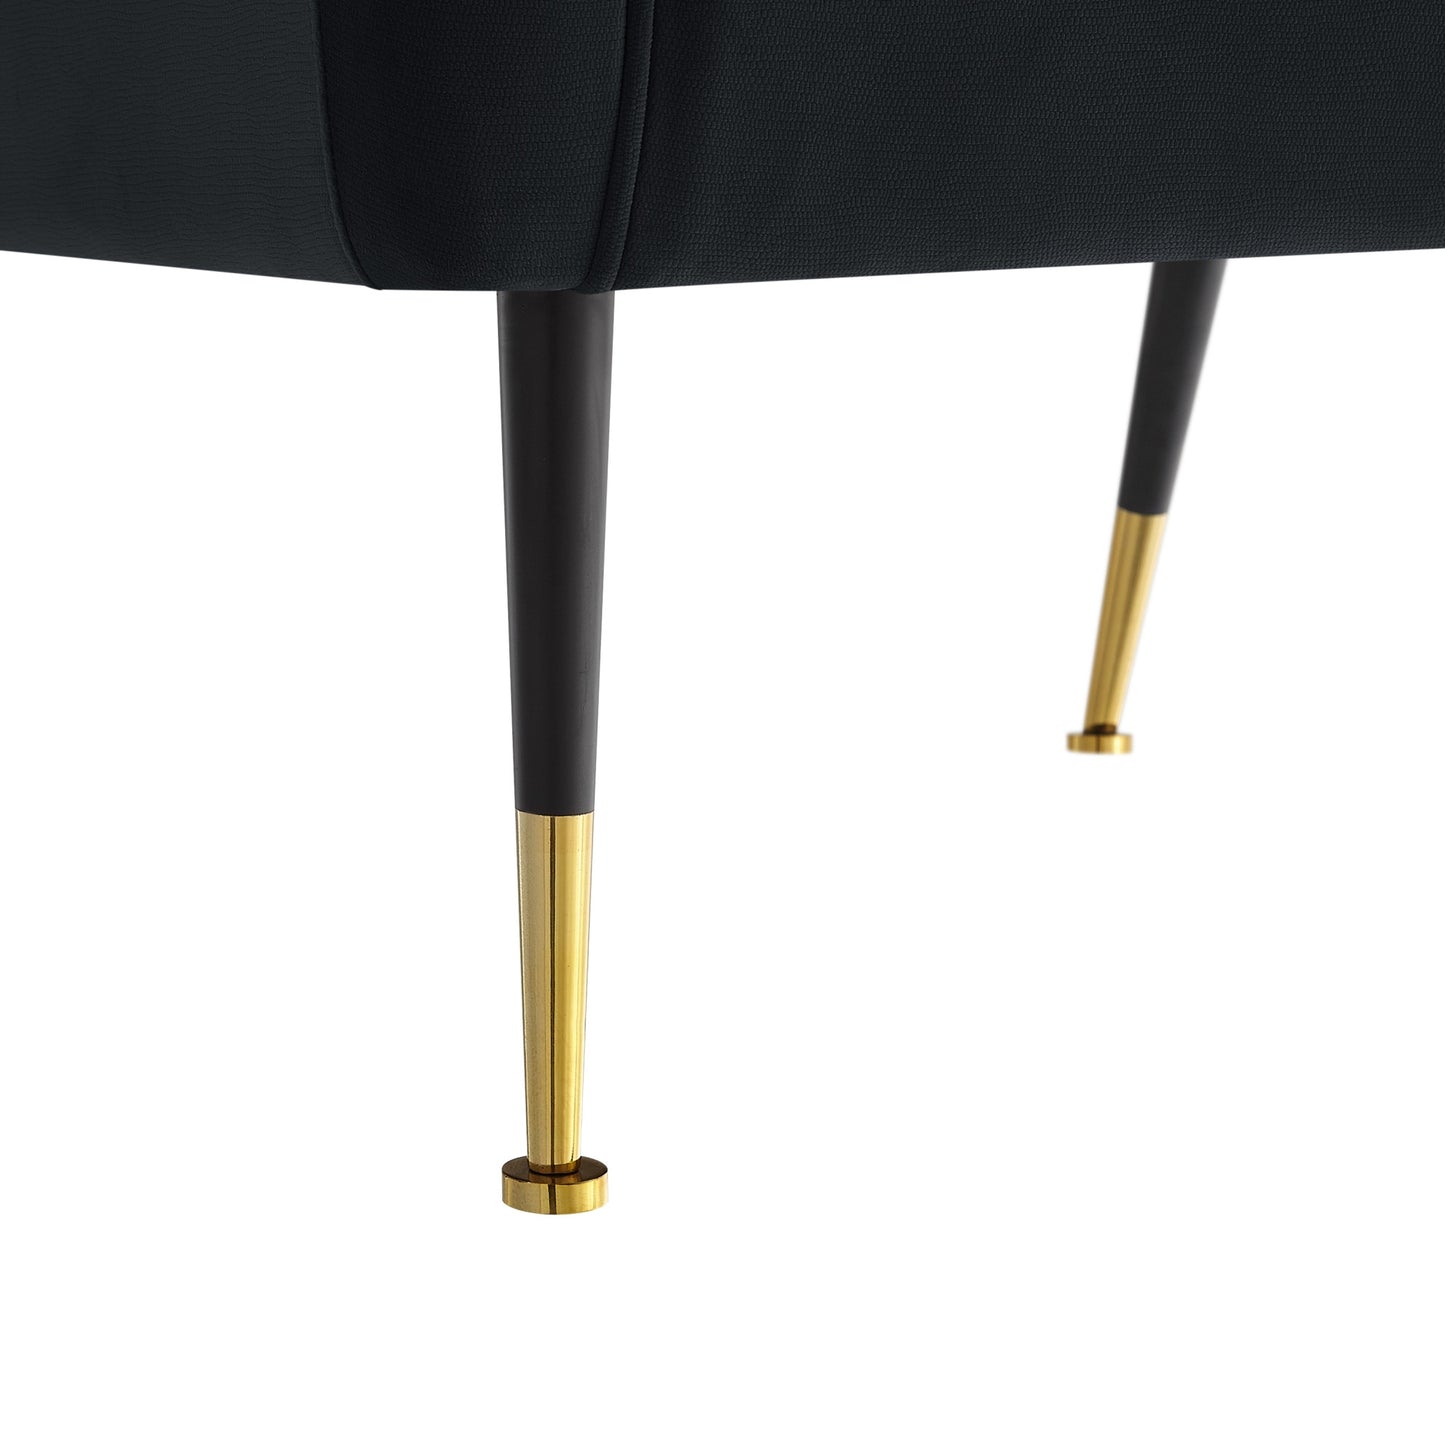 32" Black And Gold Velvet Arm Chair